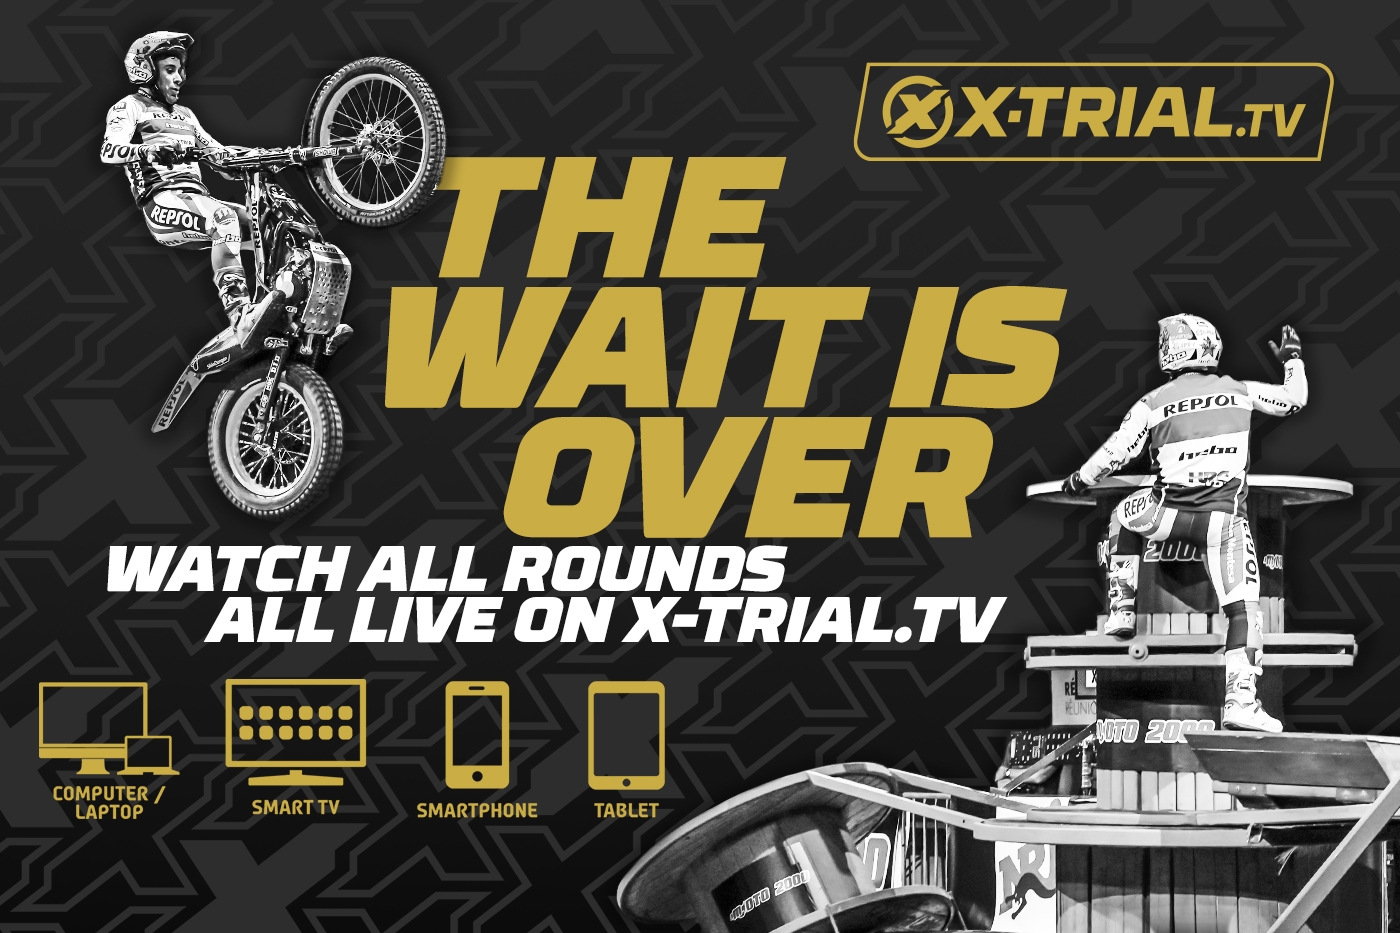 Sigue el Campeonato del Mundo FIM X-Trial en X-Trial.tv 